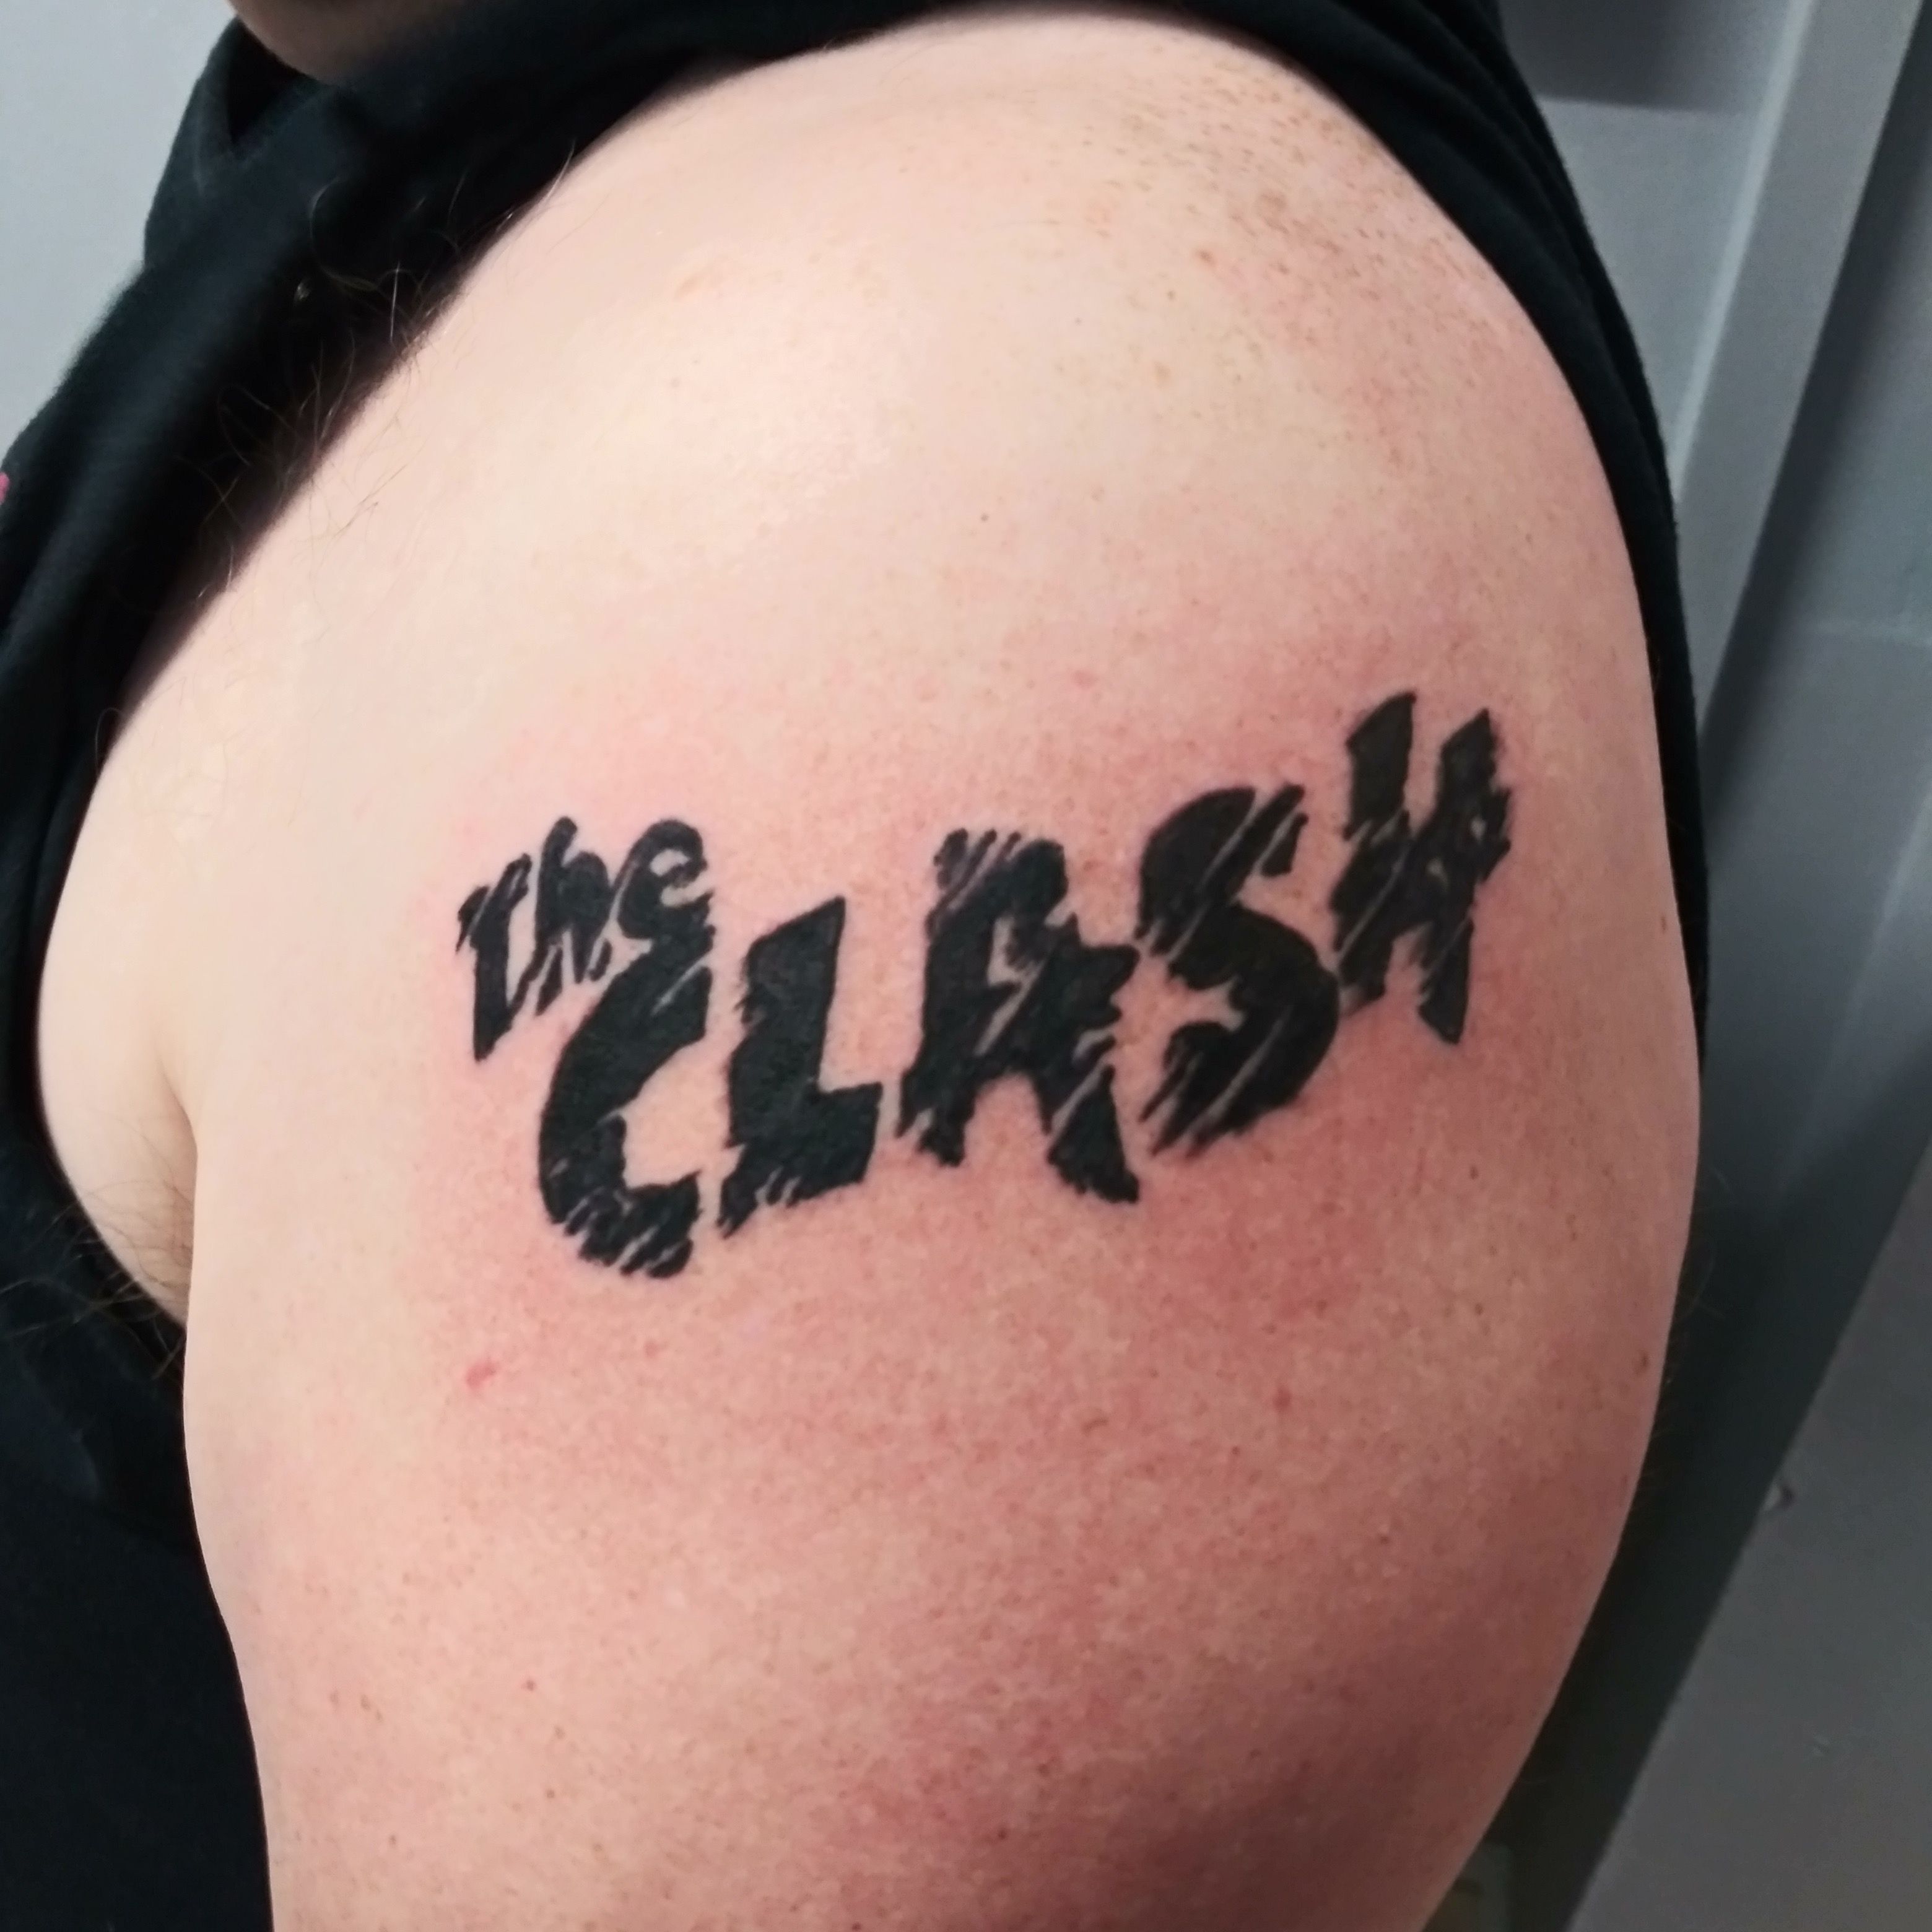 Tattoo the Clash Joe Strummer  Body tattoos The clash tattoo Body art